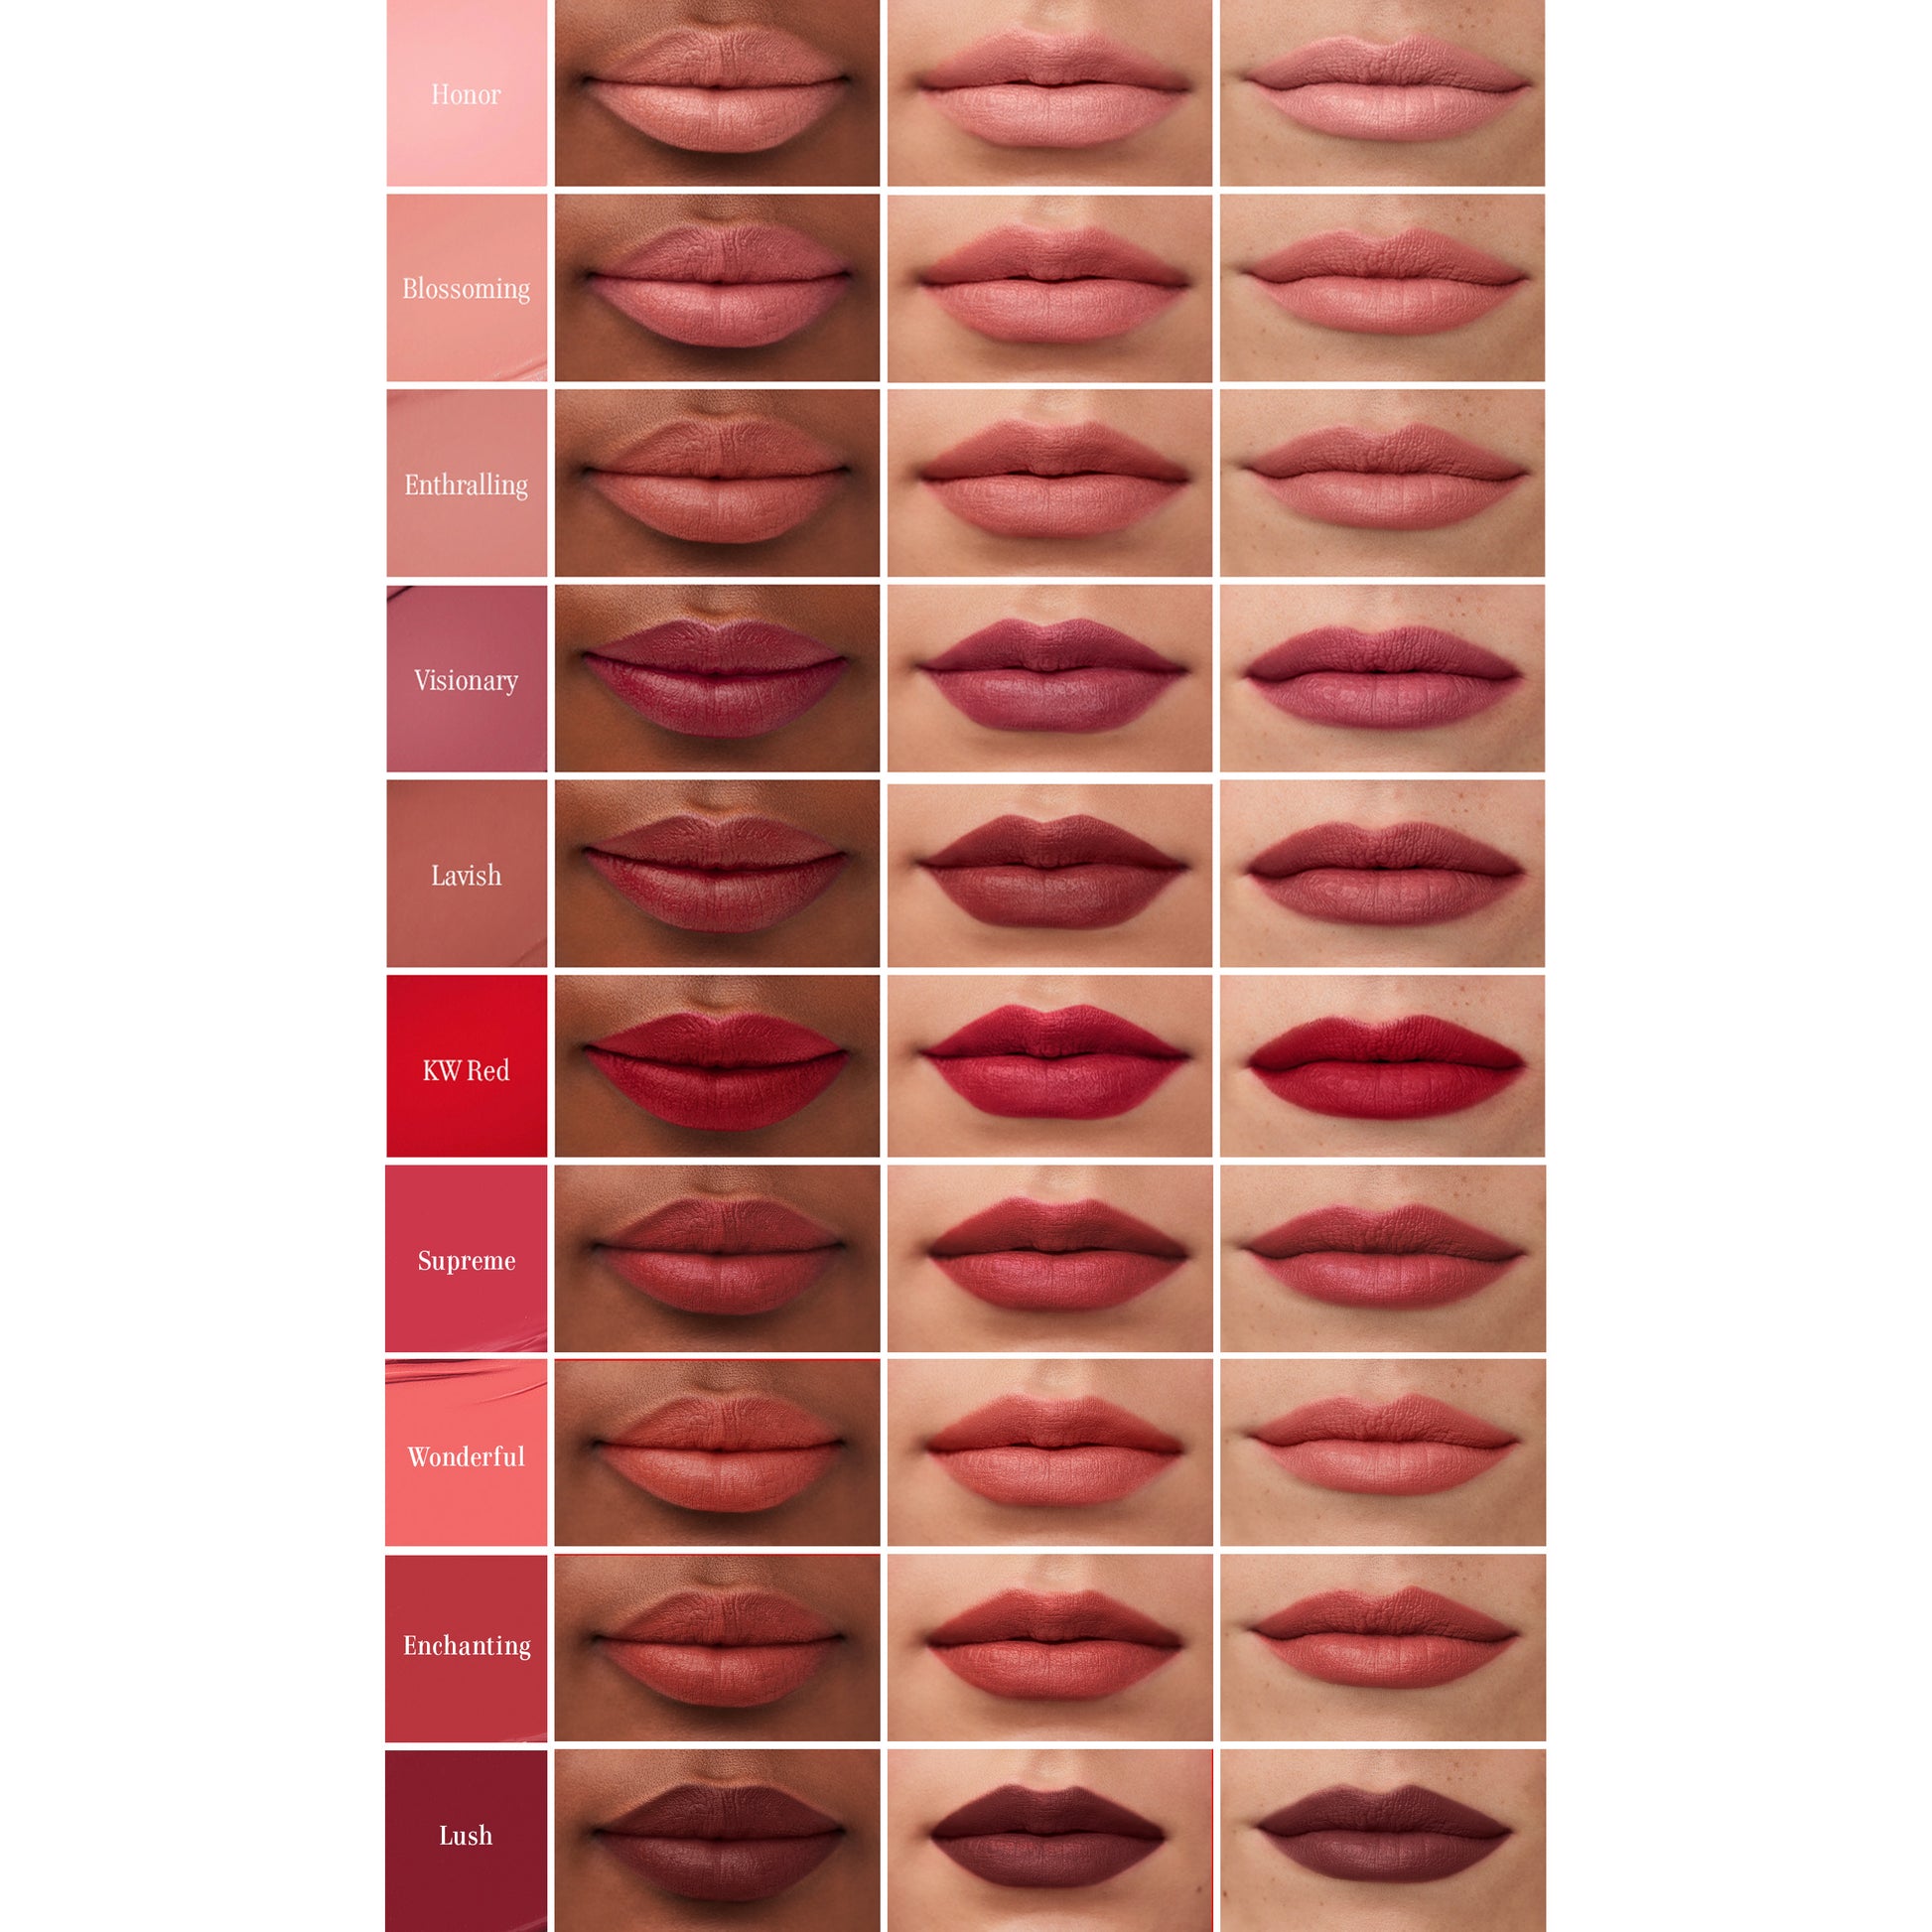 Liquid - Naturally Weis Kjaer Lush Lipstick – Matte,